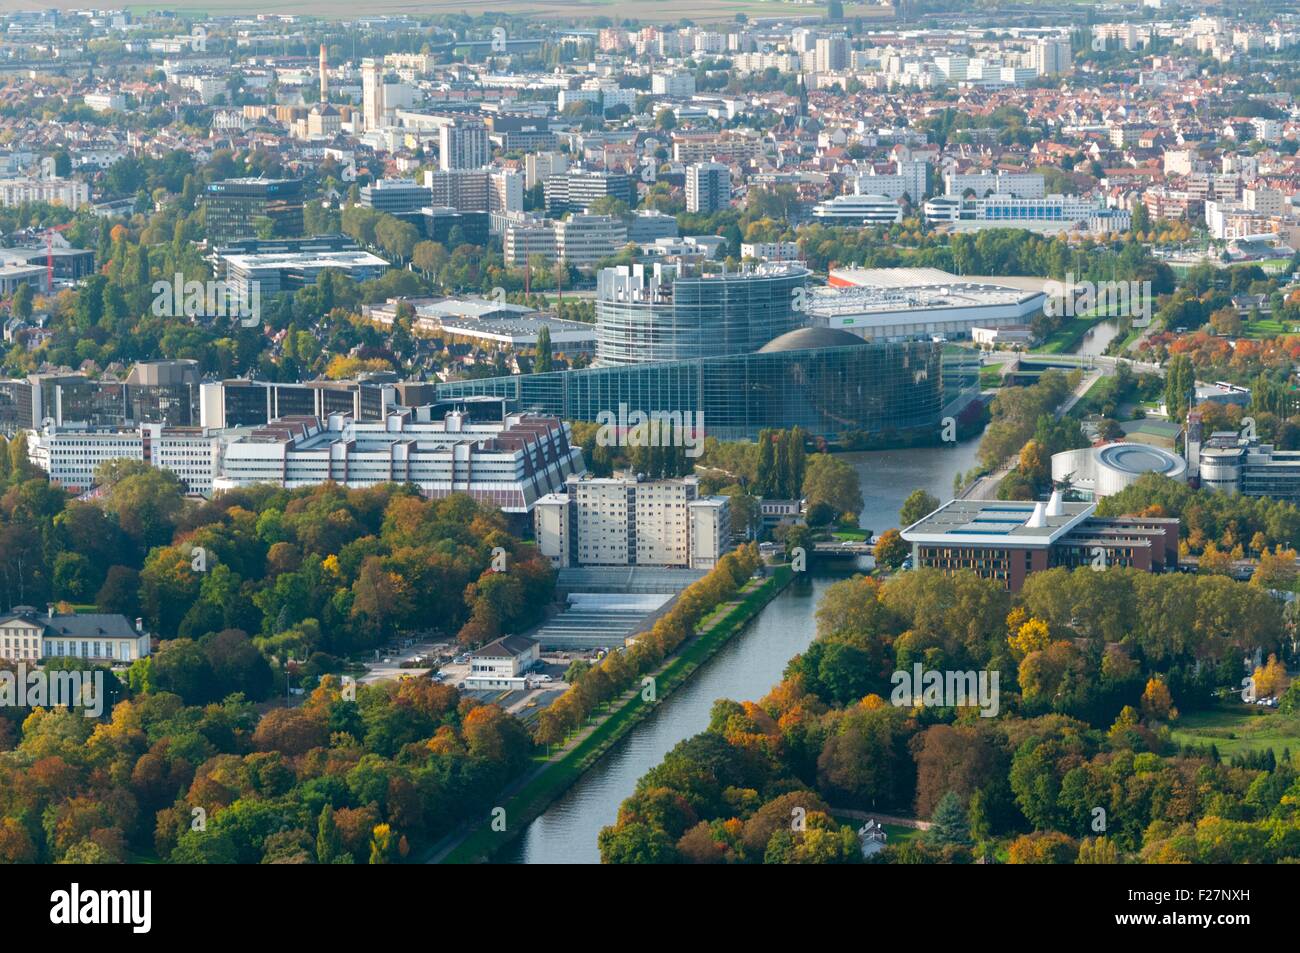 Francia, Estrasburgo, edificios de instituciones europeas, Palacio de Europa, Instituto de Derechos Humanos y parlamento Europeo (vista aérea) Foto de stock